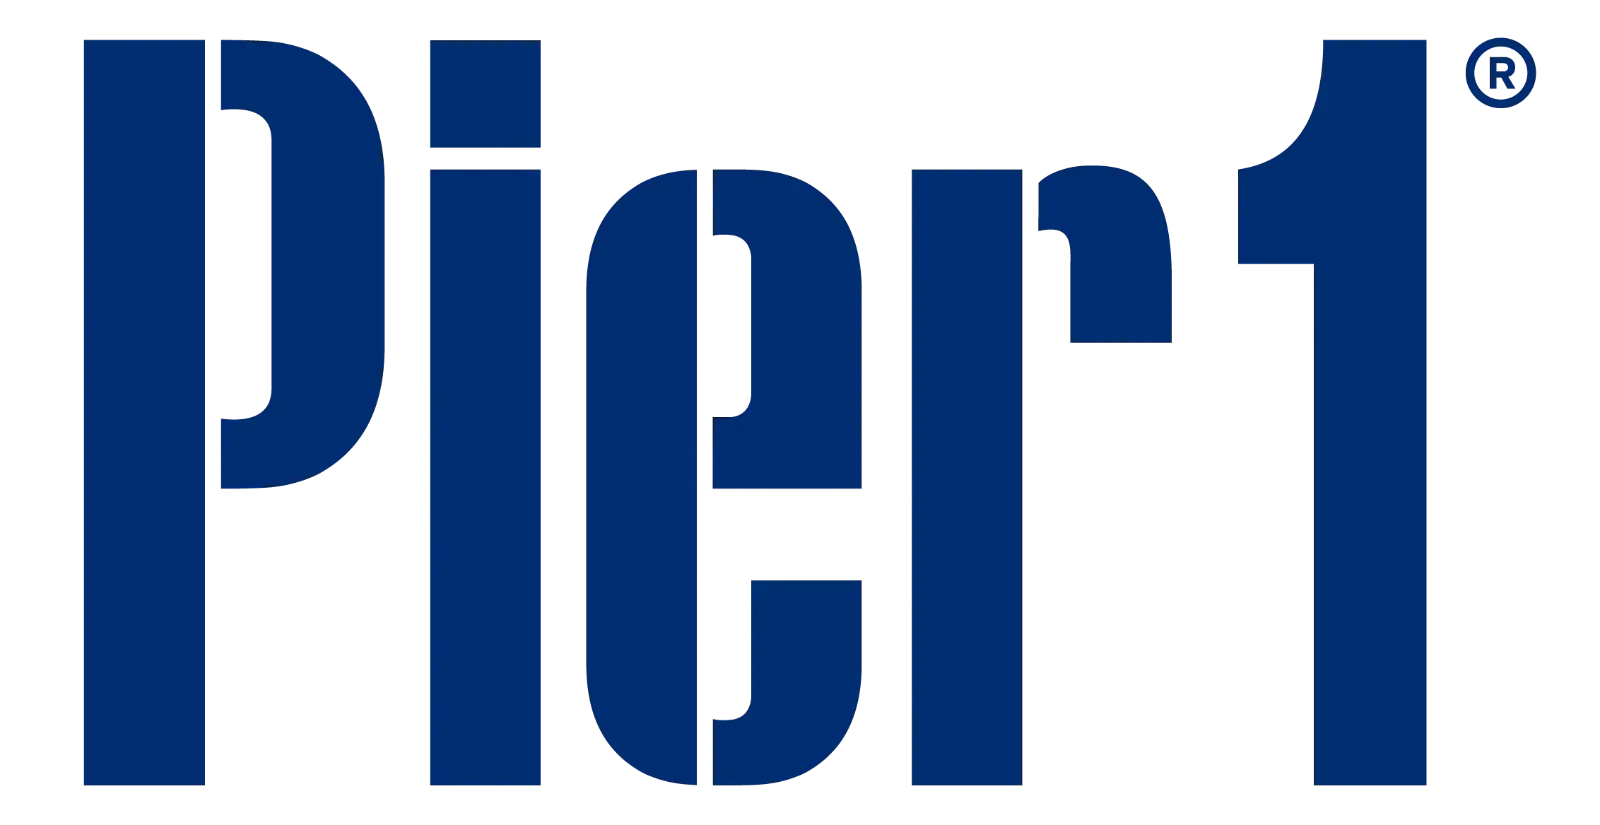 Pier 1 Logo